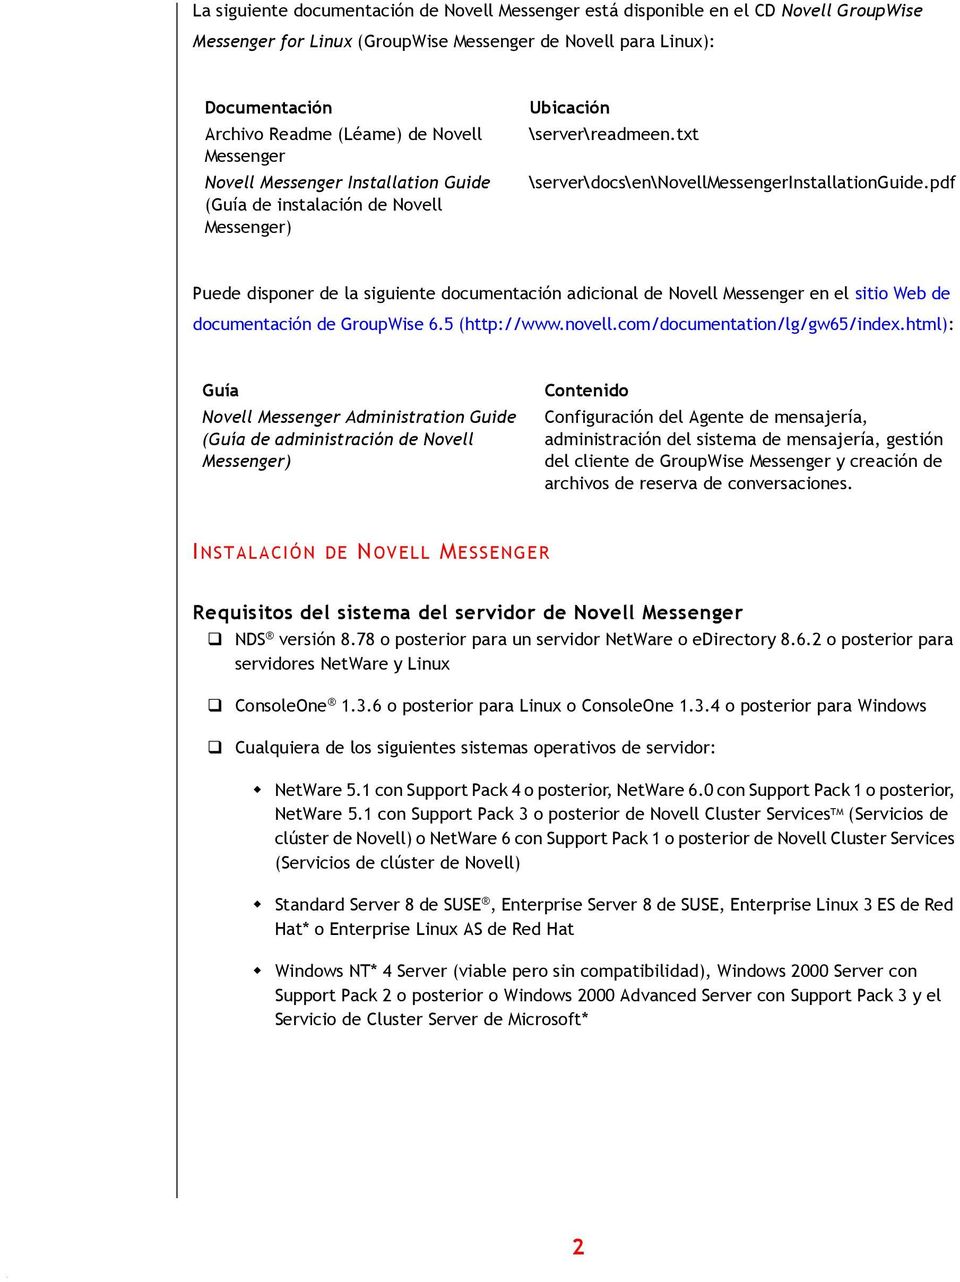 pdf Puede dispner de la siguiente dcumentación adicinal de Nvell Messenger en el siti Web de dcumentación de GrupWise 6.5 (http://www.nvell.cm/dcumentatin/lg/gw65/index.